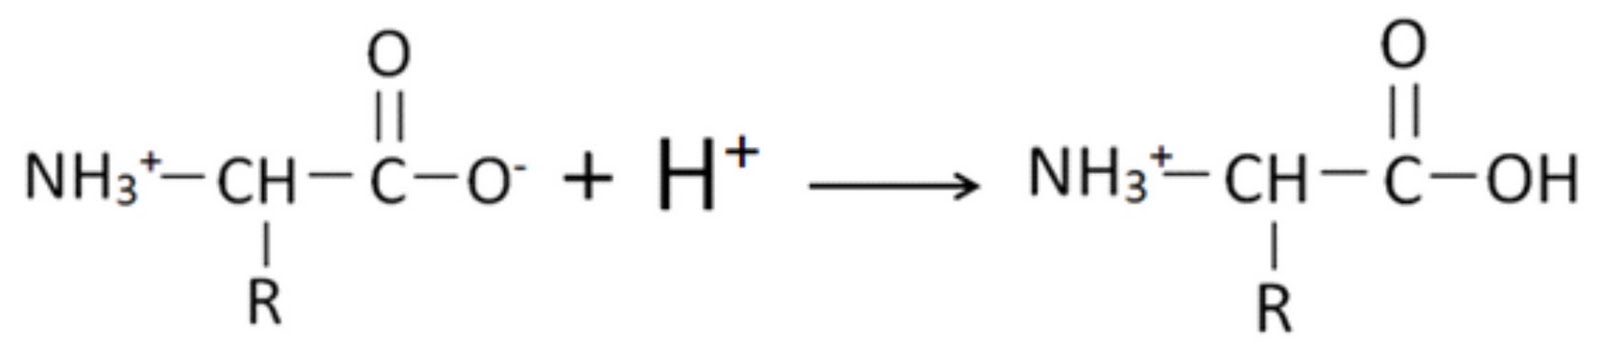 Б акриловая кислота. Акриловая кислота nh3. Этиламин этанол. Акриловая кислота с бромоводородом. Полимеризация акриловой кислоты.